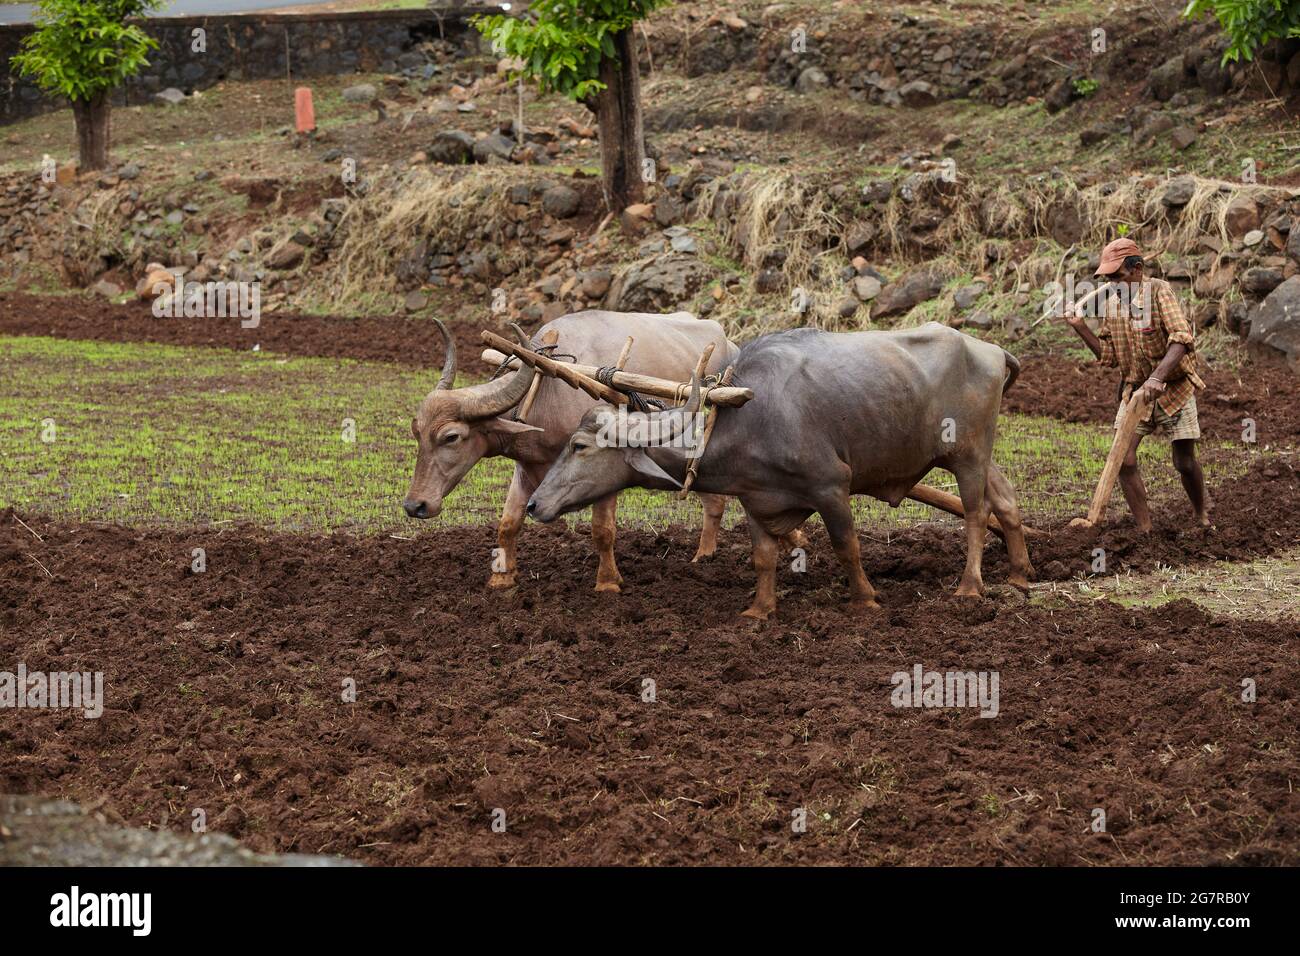 Éleveur de troupeaux labourant des champs, Maharashtra, Inde, Asie Banque D'Images